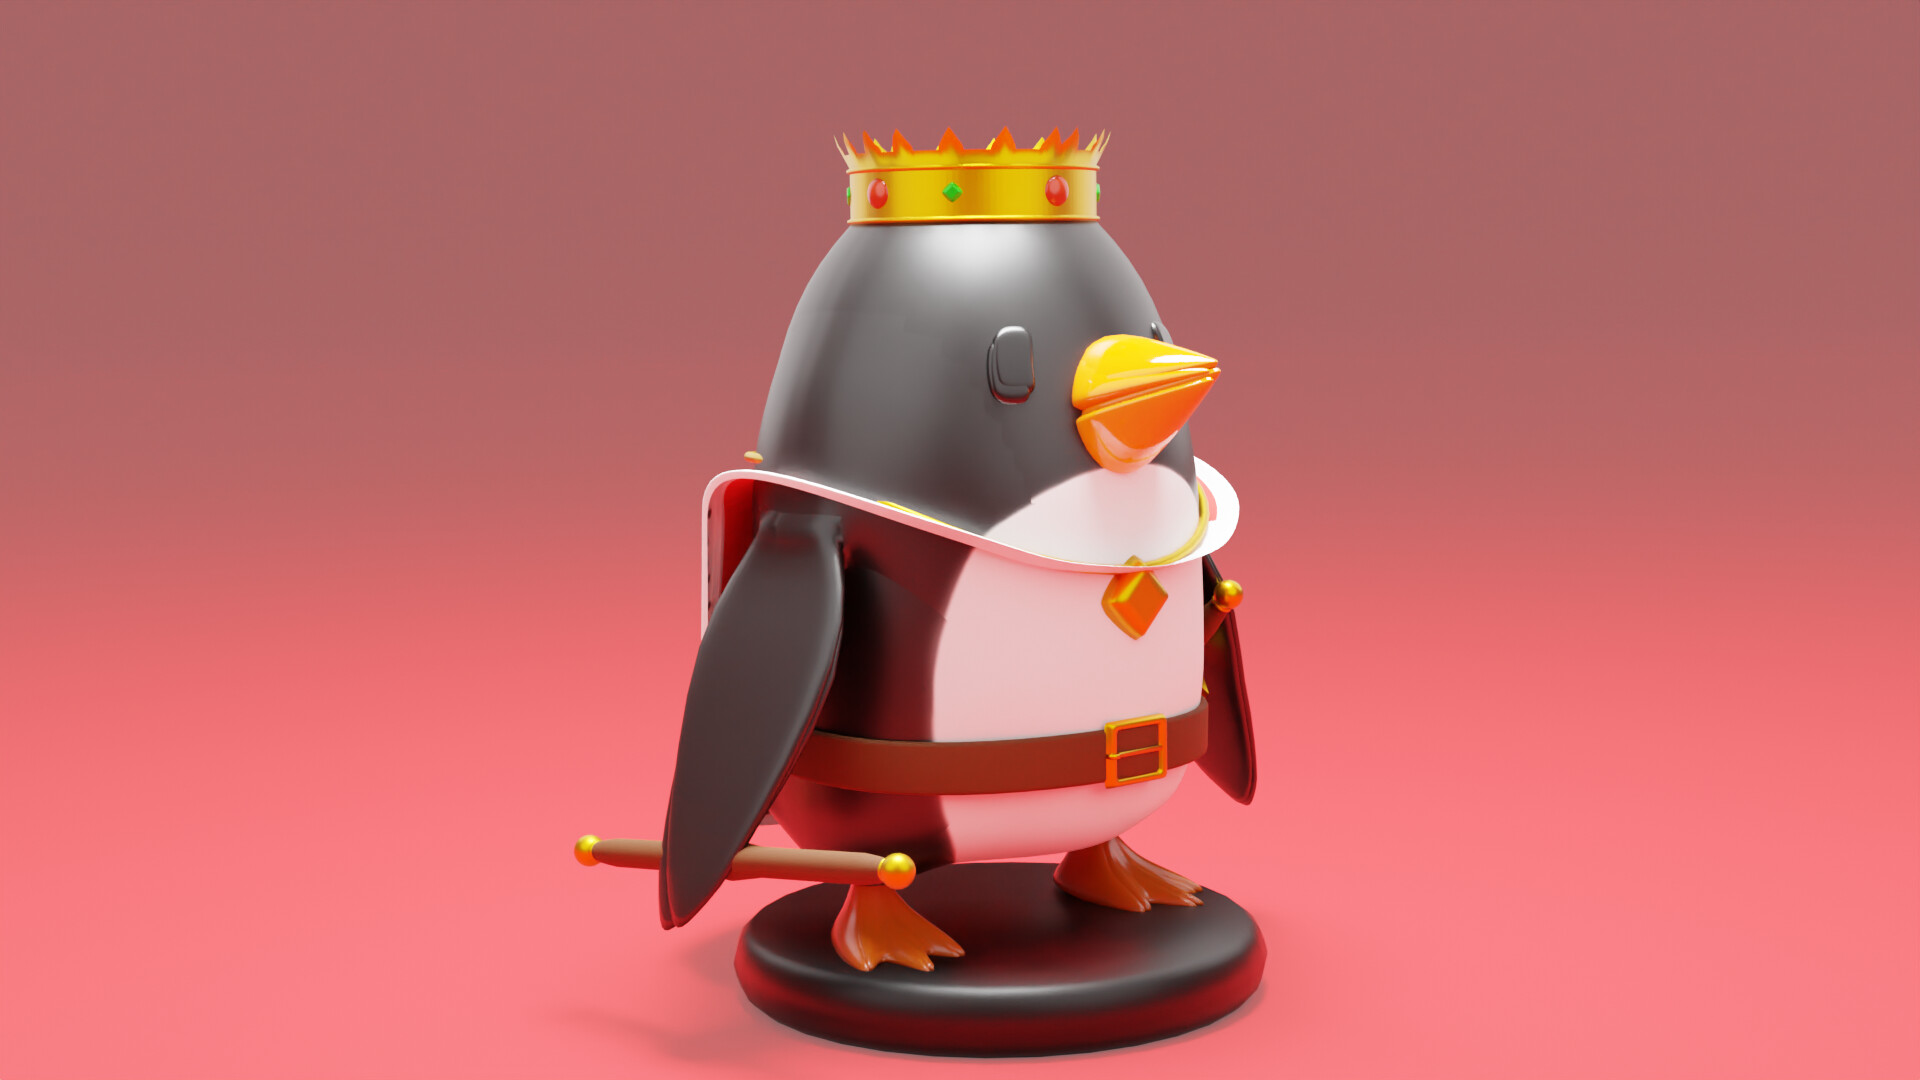 ArtStation - King penguin